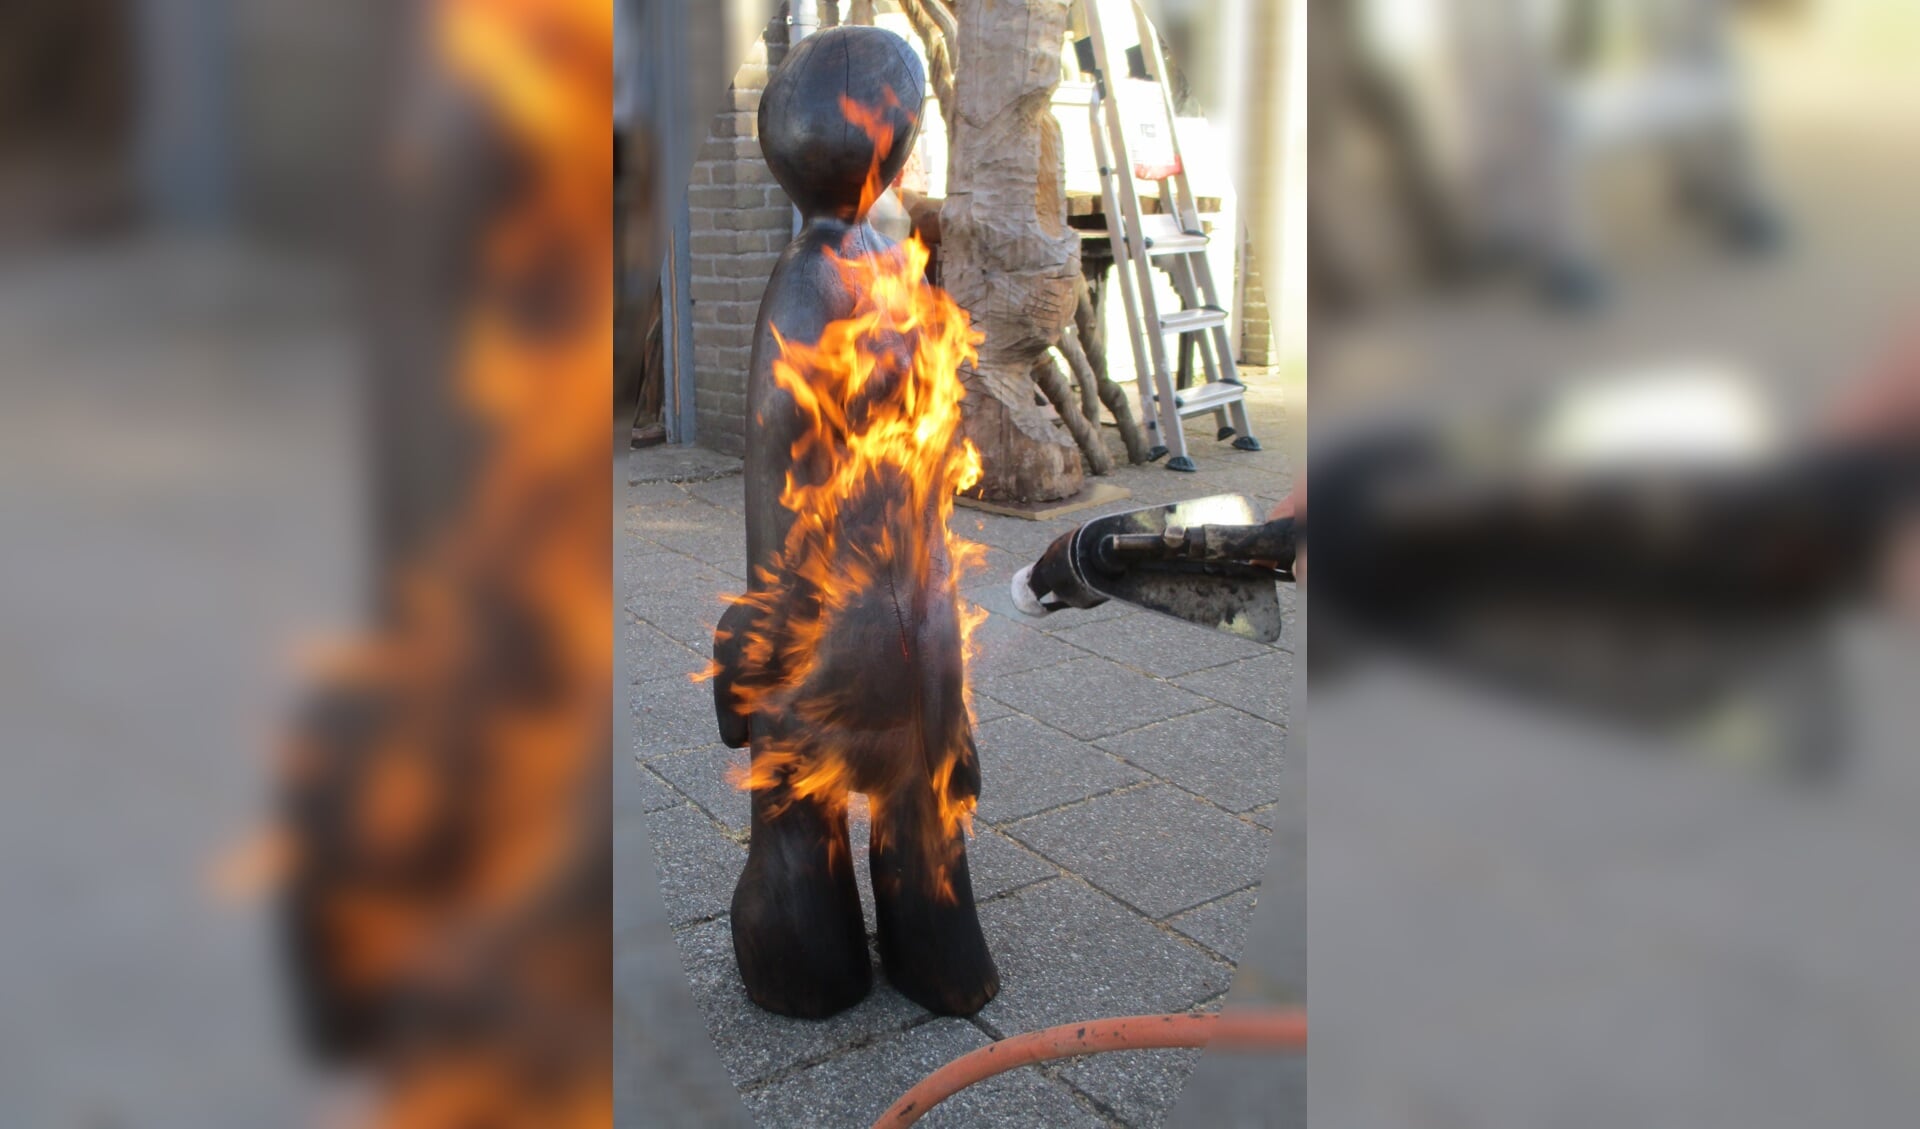 Jos Apeldoorn experimenteert in het verbranden van beelden voor een diep zwarte uitstraling. (Foto: aangeleverd)